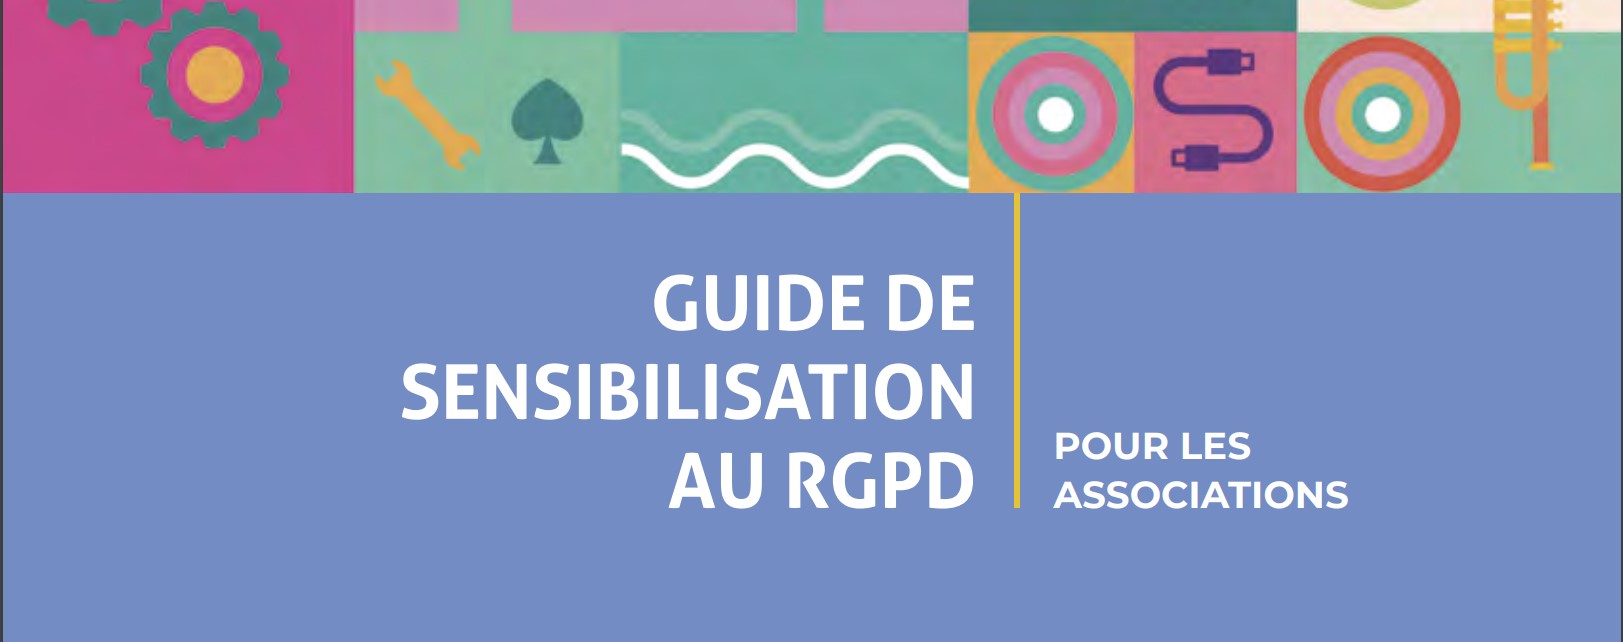 guide de sensibilisation au RGPD pour les associations de la CNIL